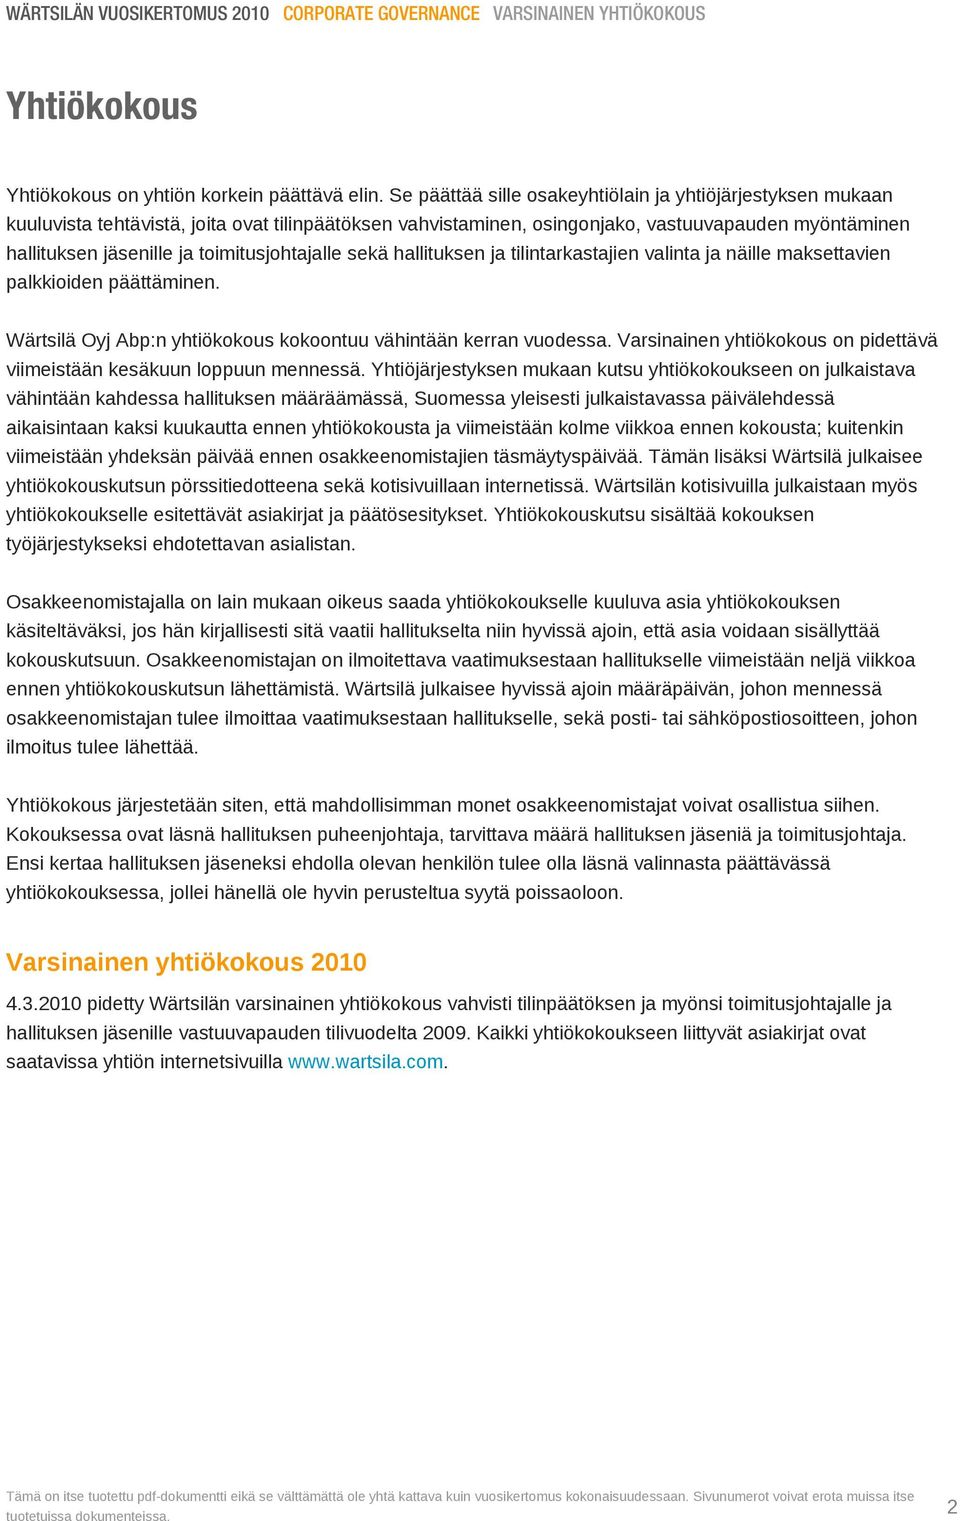 toimitusjohtajalle sekä hallituksen ja tilintarkastajien valinta ja näille maksettavien palkkioiden päättäminen. Wärtsilä Oyj Abp:n yhtiökokous kokoontuu vähintään kerran vuodessa.